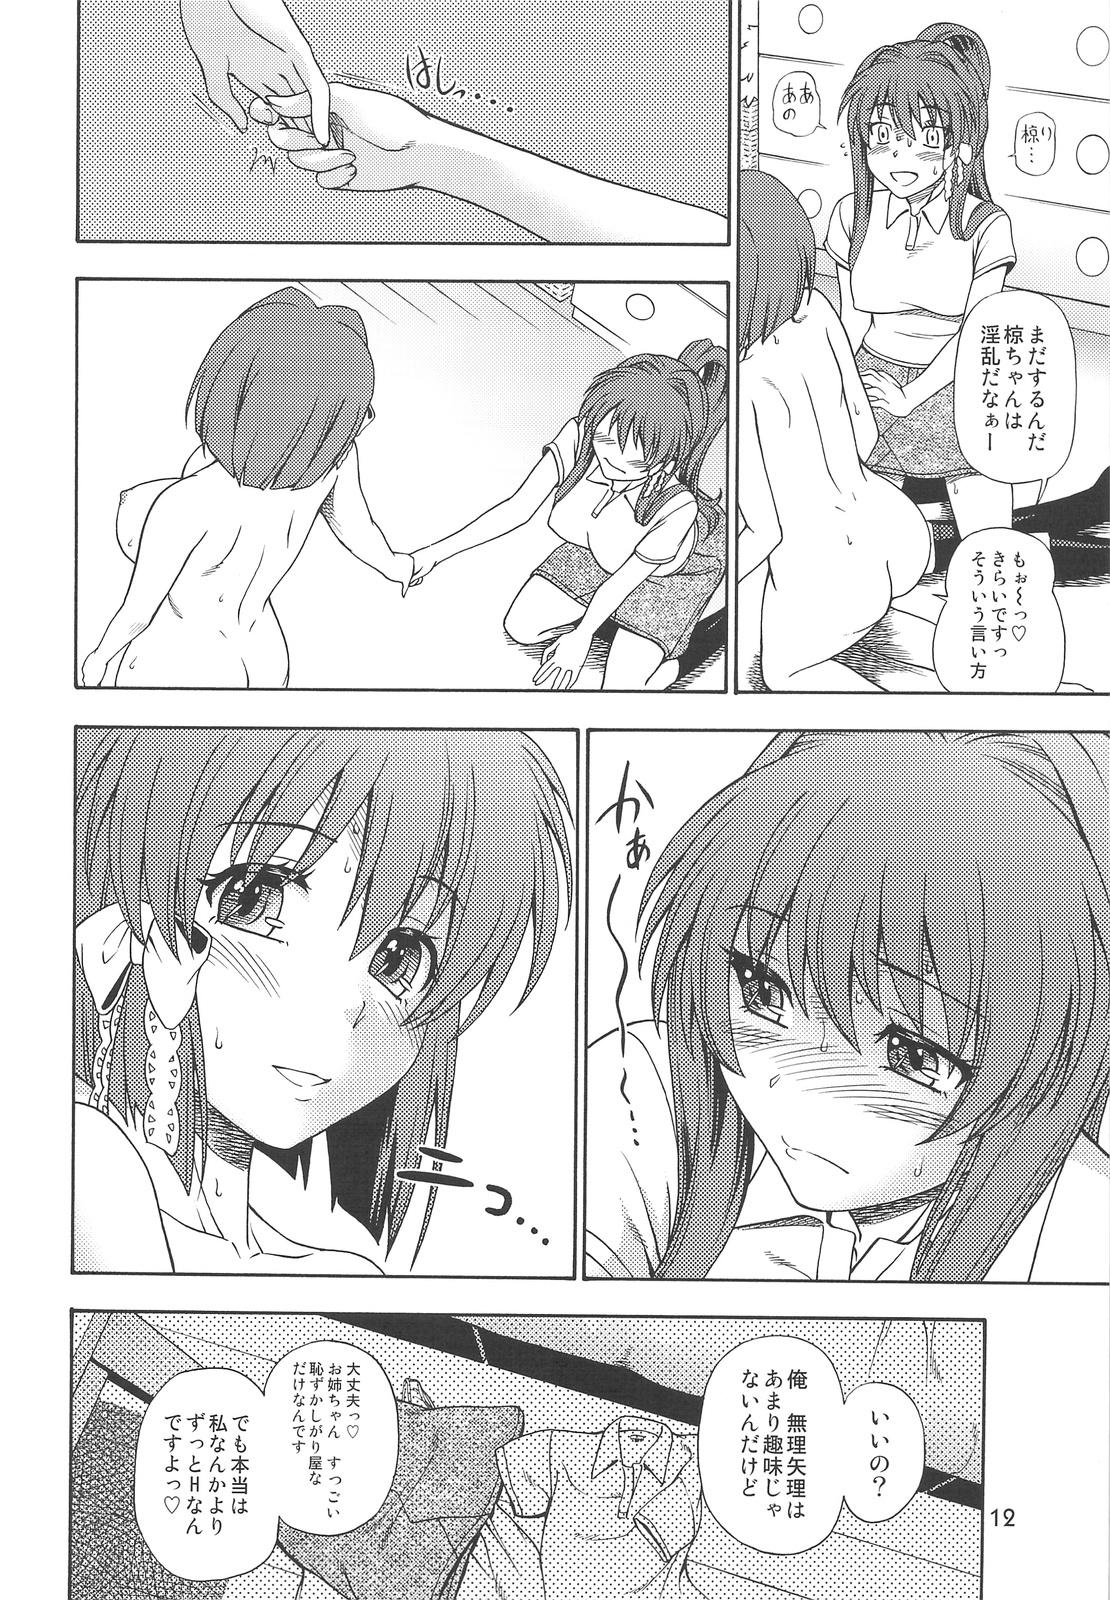 Ball Busting Fujibayashi Nado - Fujibayashi Twins After Story - Clannad Sex Pussy - Page 11